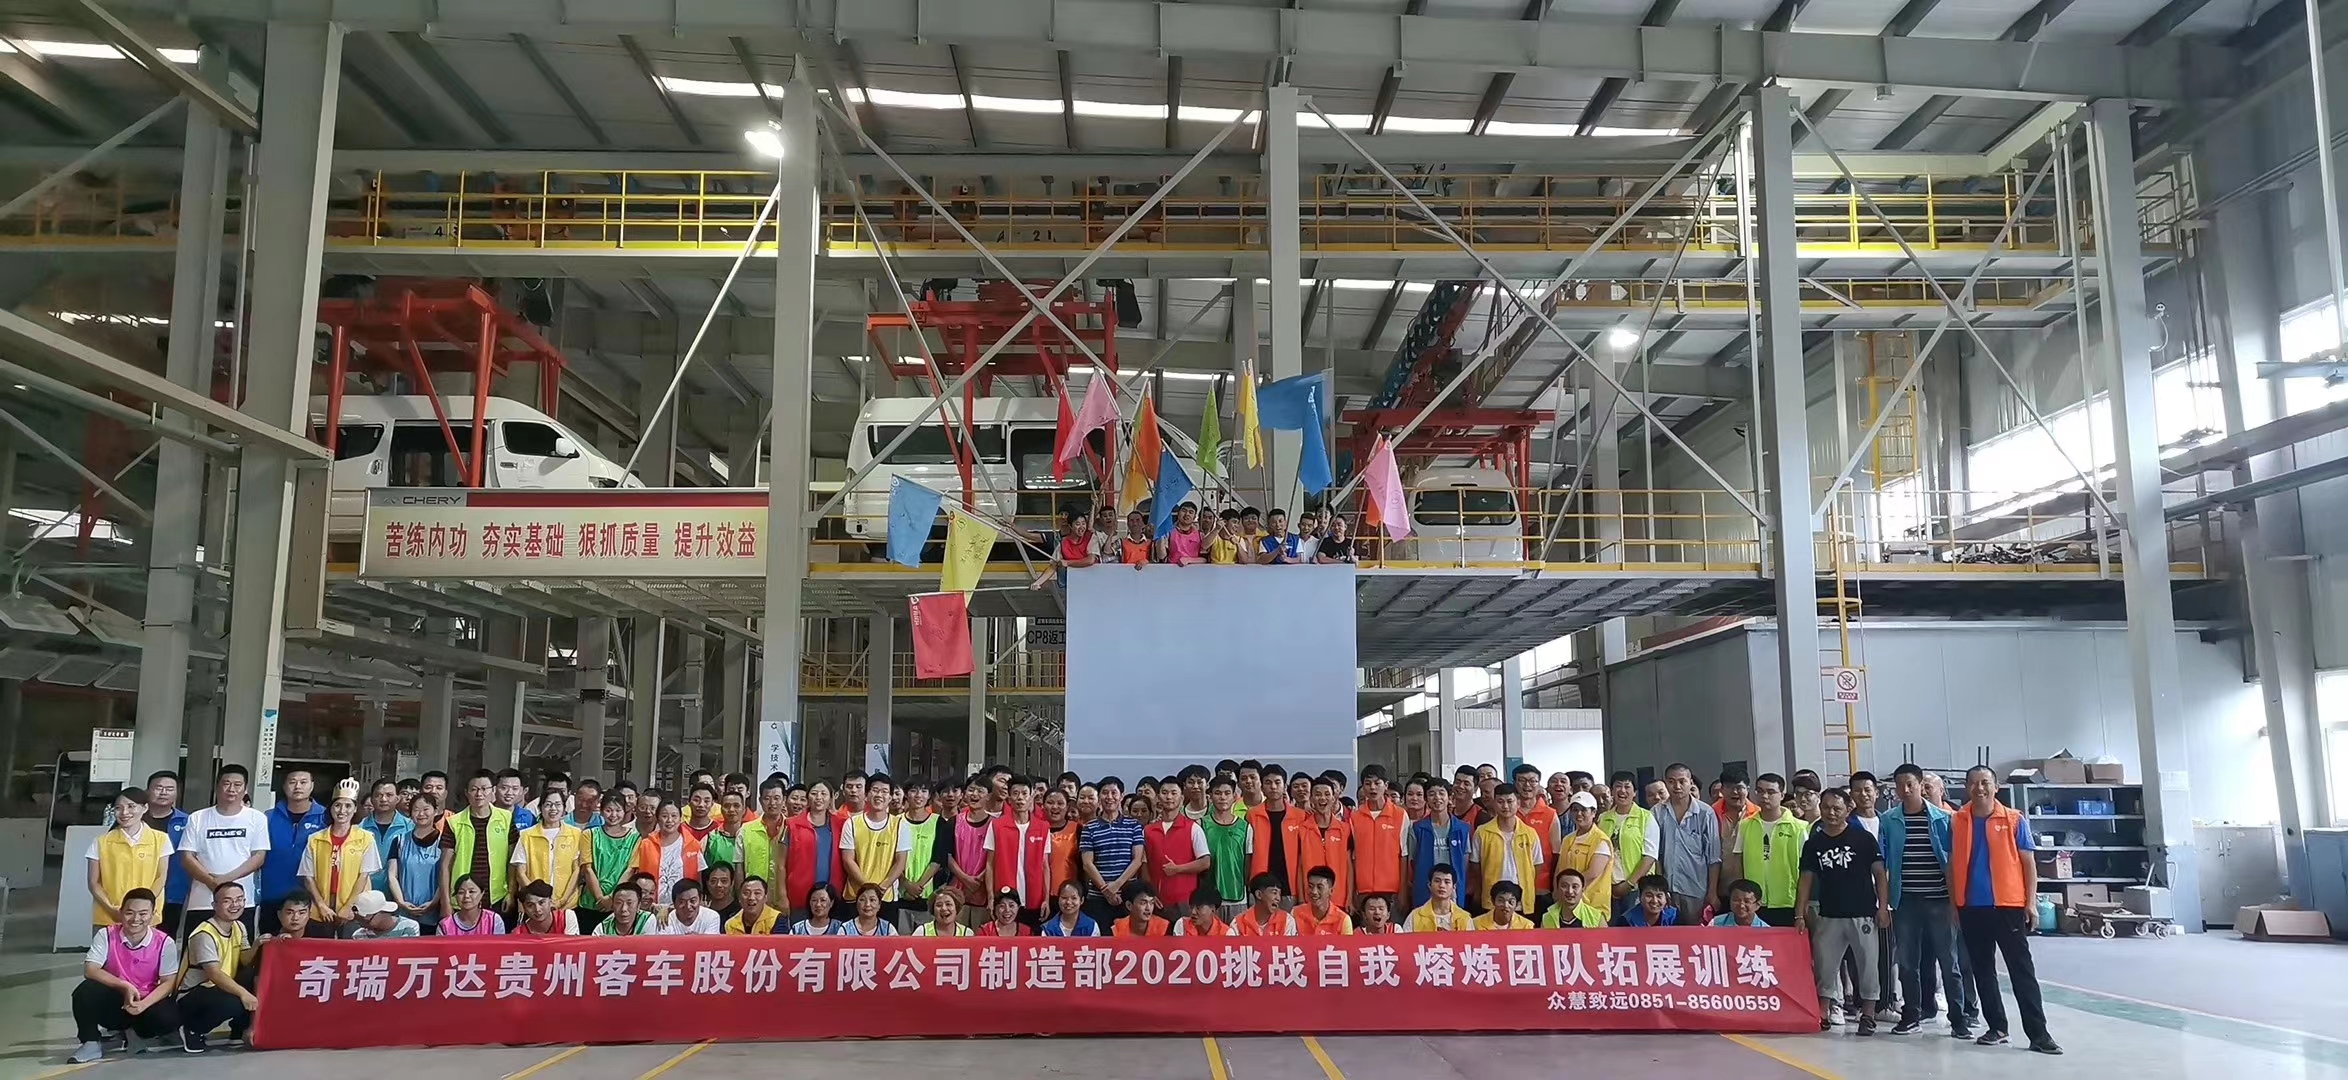 奇瑞万达贵州客车股份有限公司制造部2020挑战自我熔炼团队拓展训练